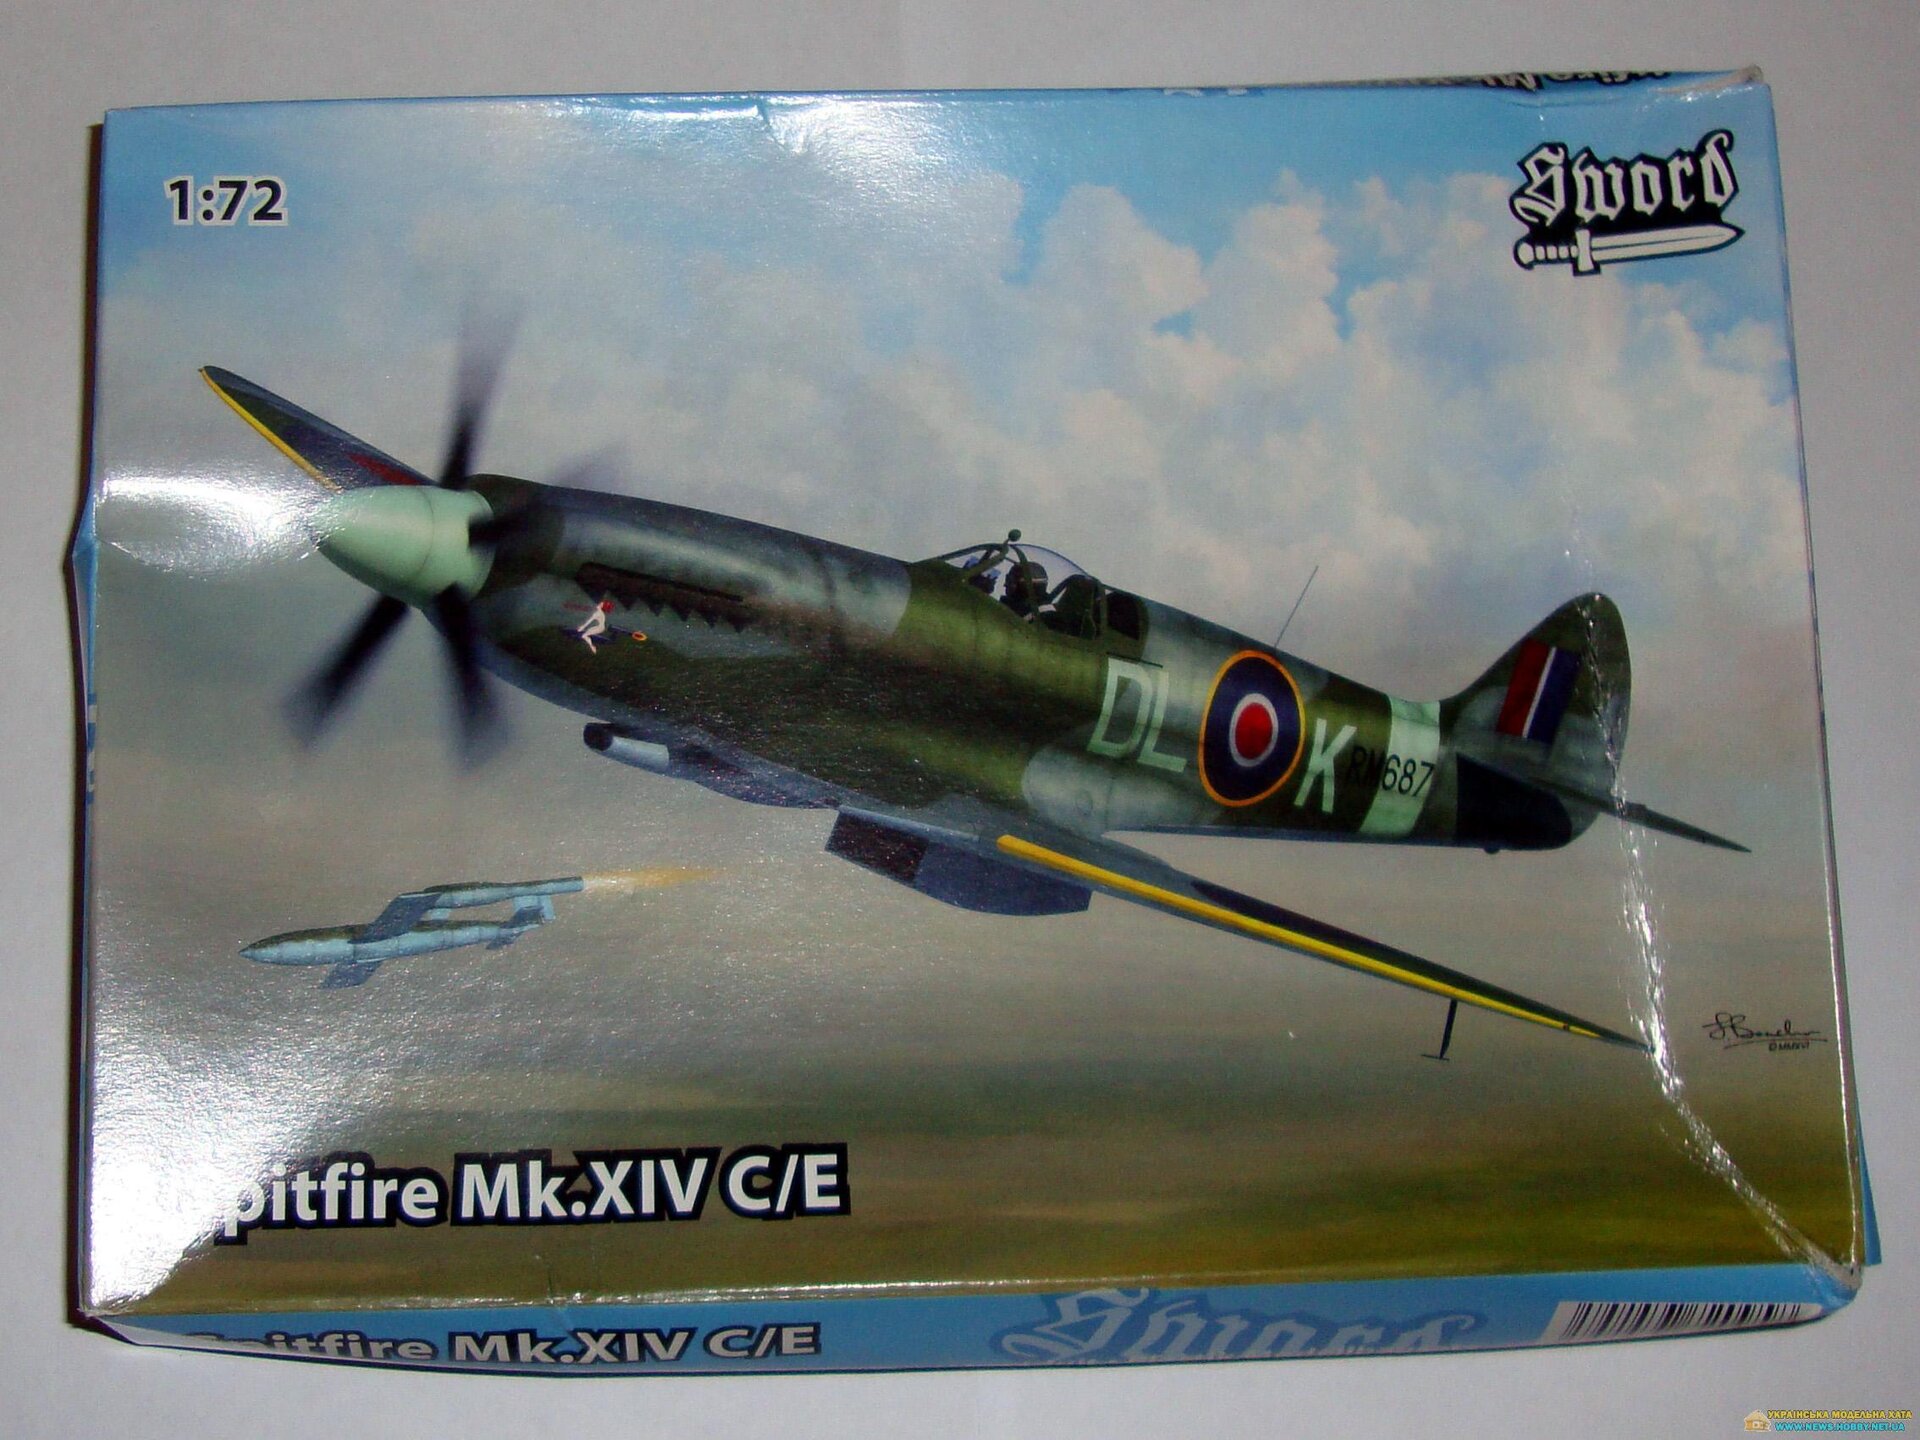 Spitfire Mk.XIV C/E Sword SW72095 - фото pic_7659a0c43732c7b8a9b7a4495ccad5de_1920x9000_1.jpg